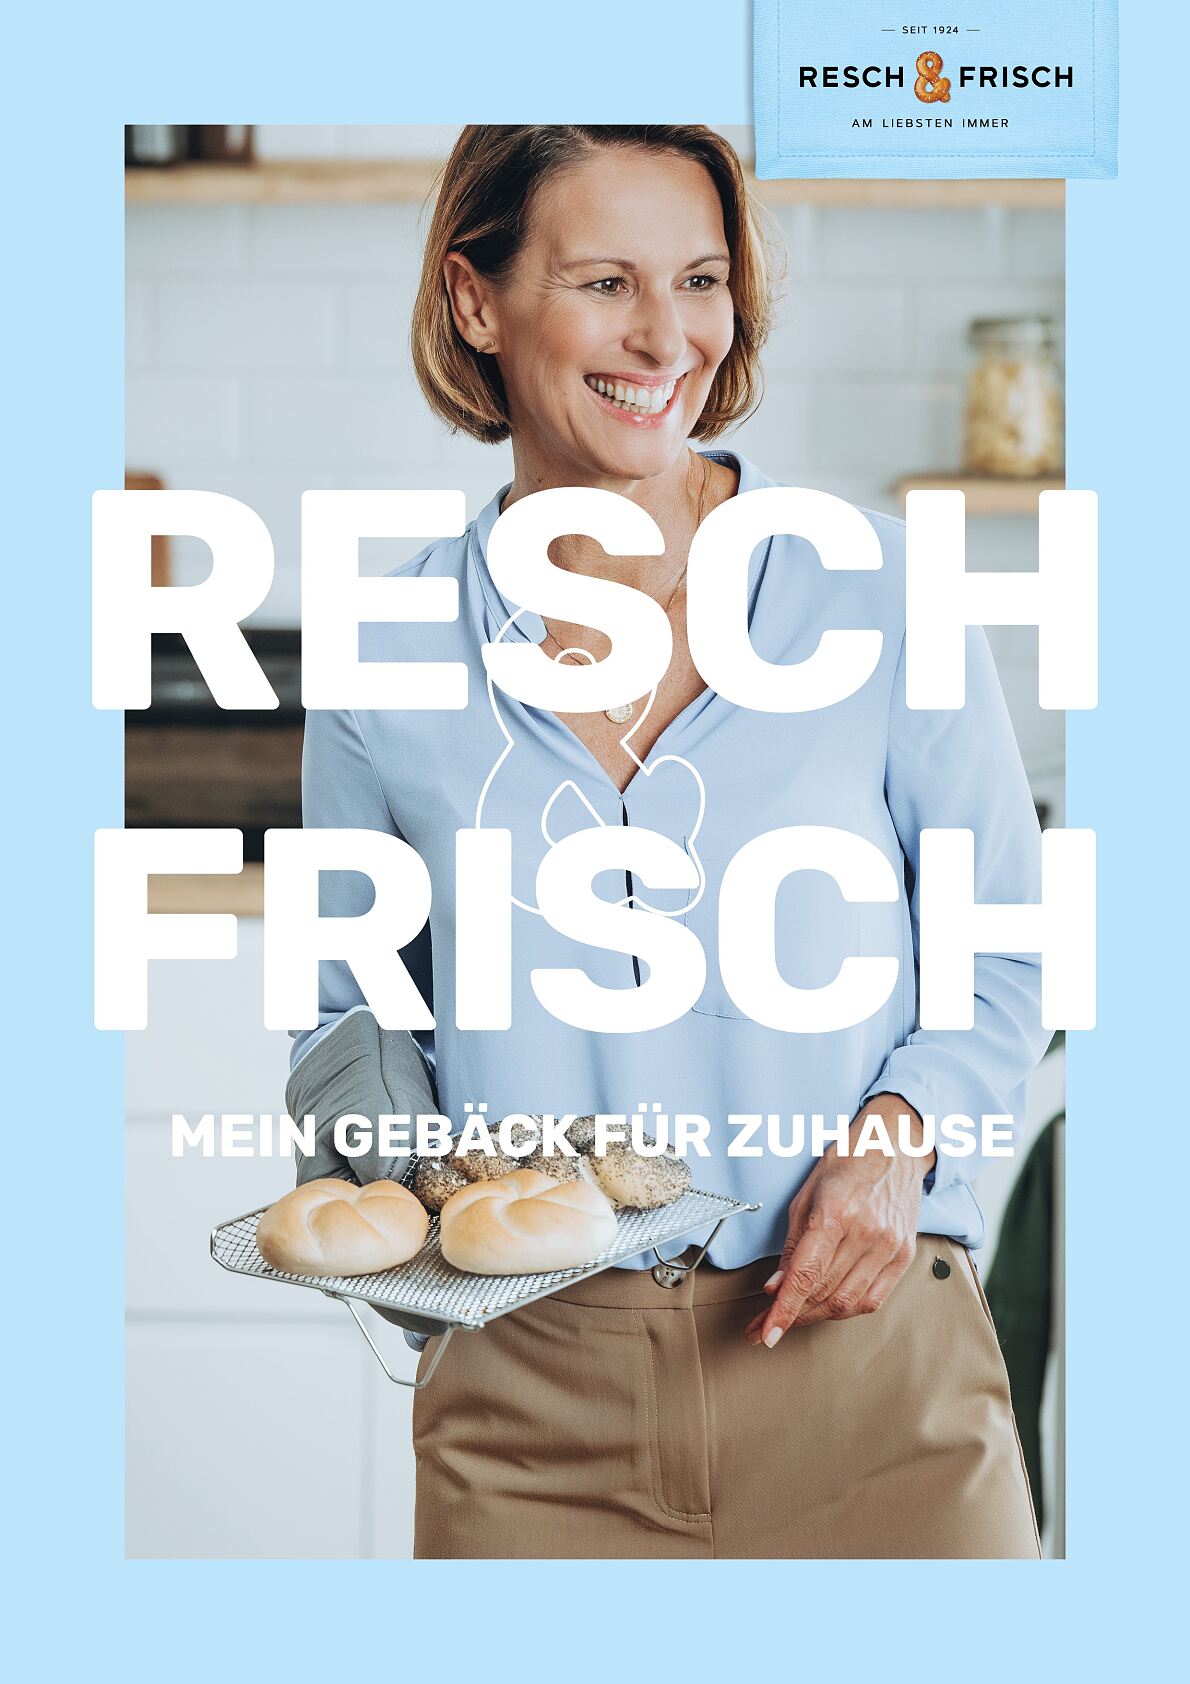 Resch& Frisch startet aufmerksamkeitsstarke B2C-Kampagne 